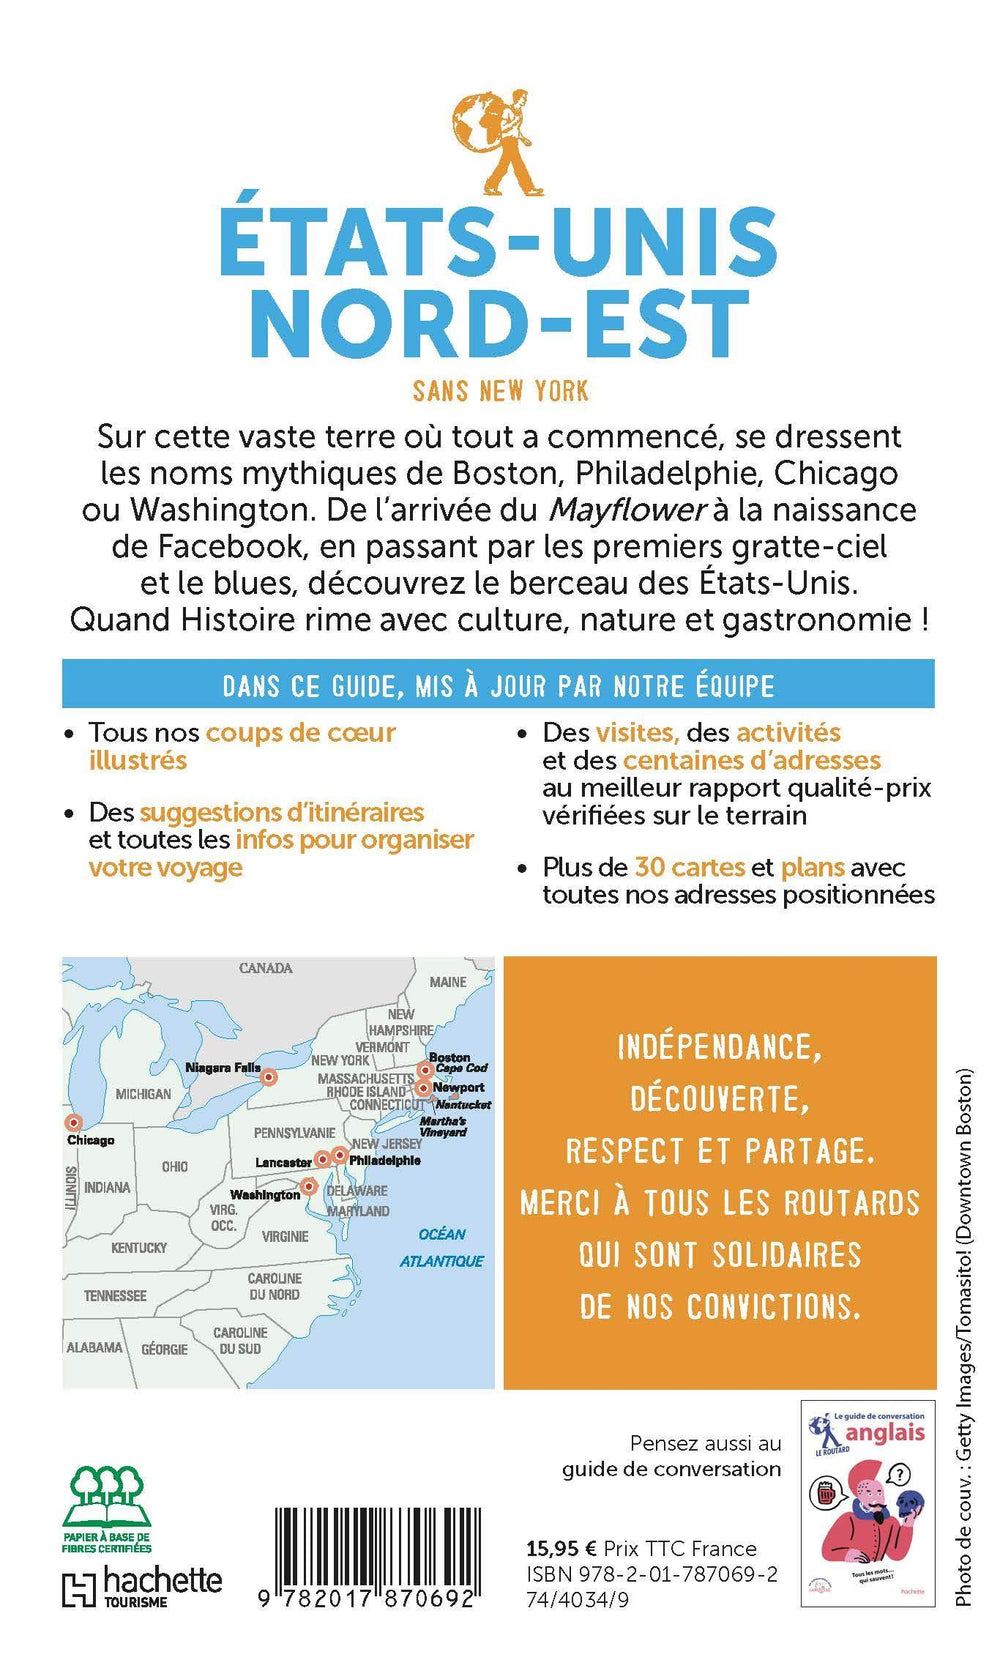 Guide du Routard - Etats Unis nord-est (sans New York) 2021/22 | Hachette guide de voyage Hachette 